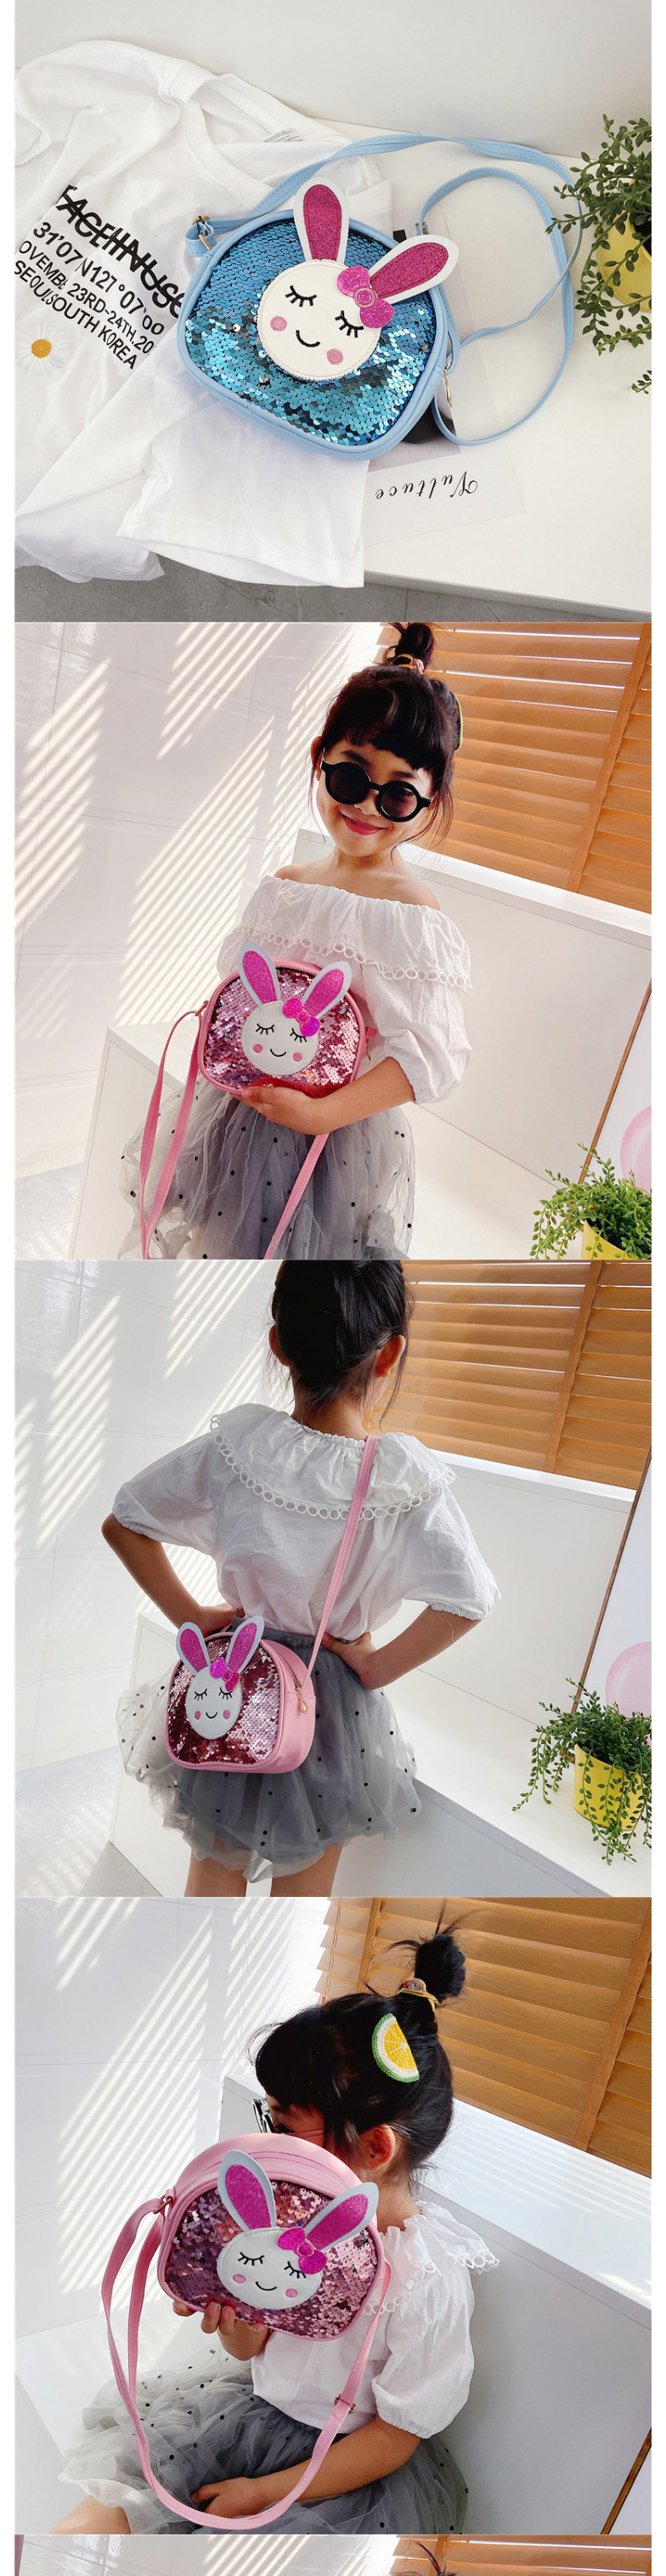 Fashion Purple Sequined Bunny Childrens One-shoulder Messenger Bag,Shoulder bags